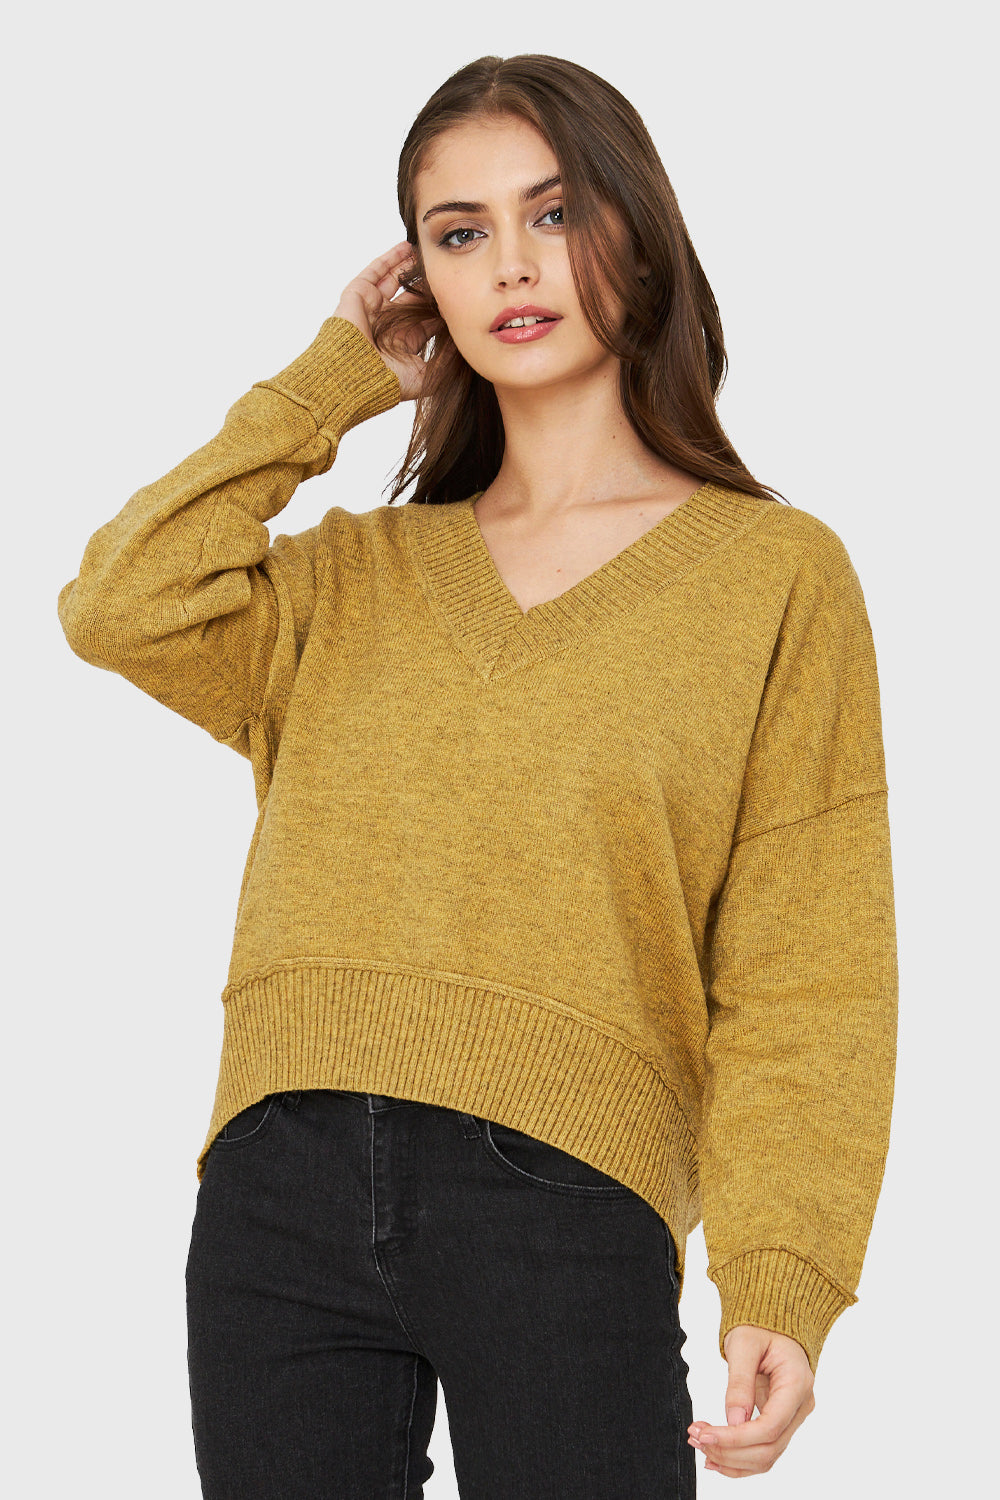 Sweater Cuello V Profundo Mostaza